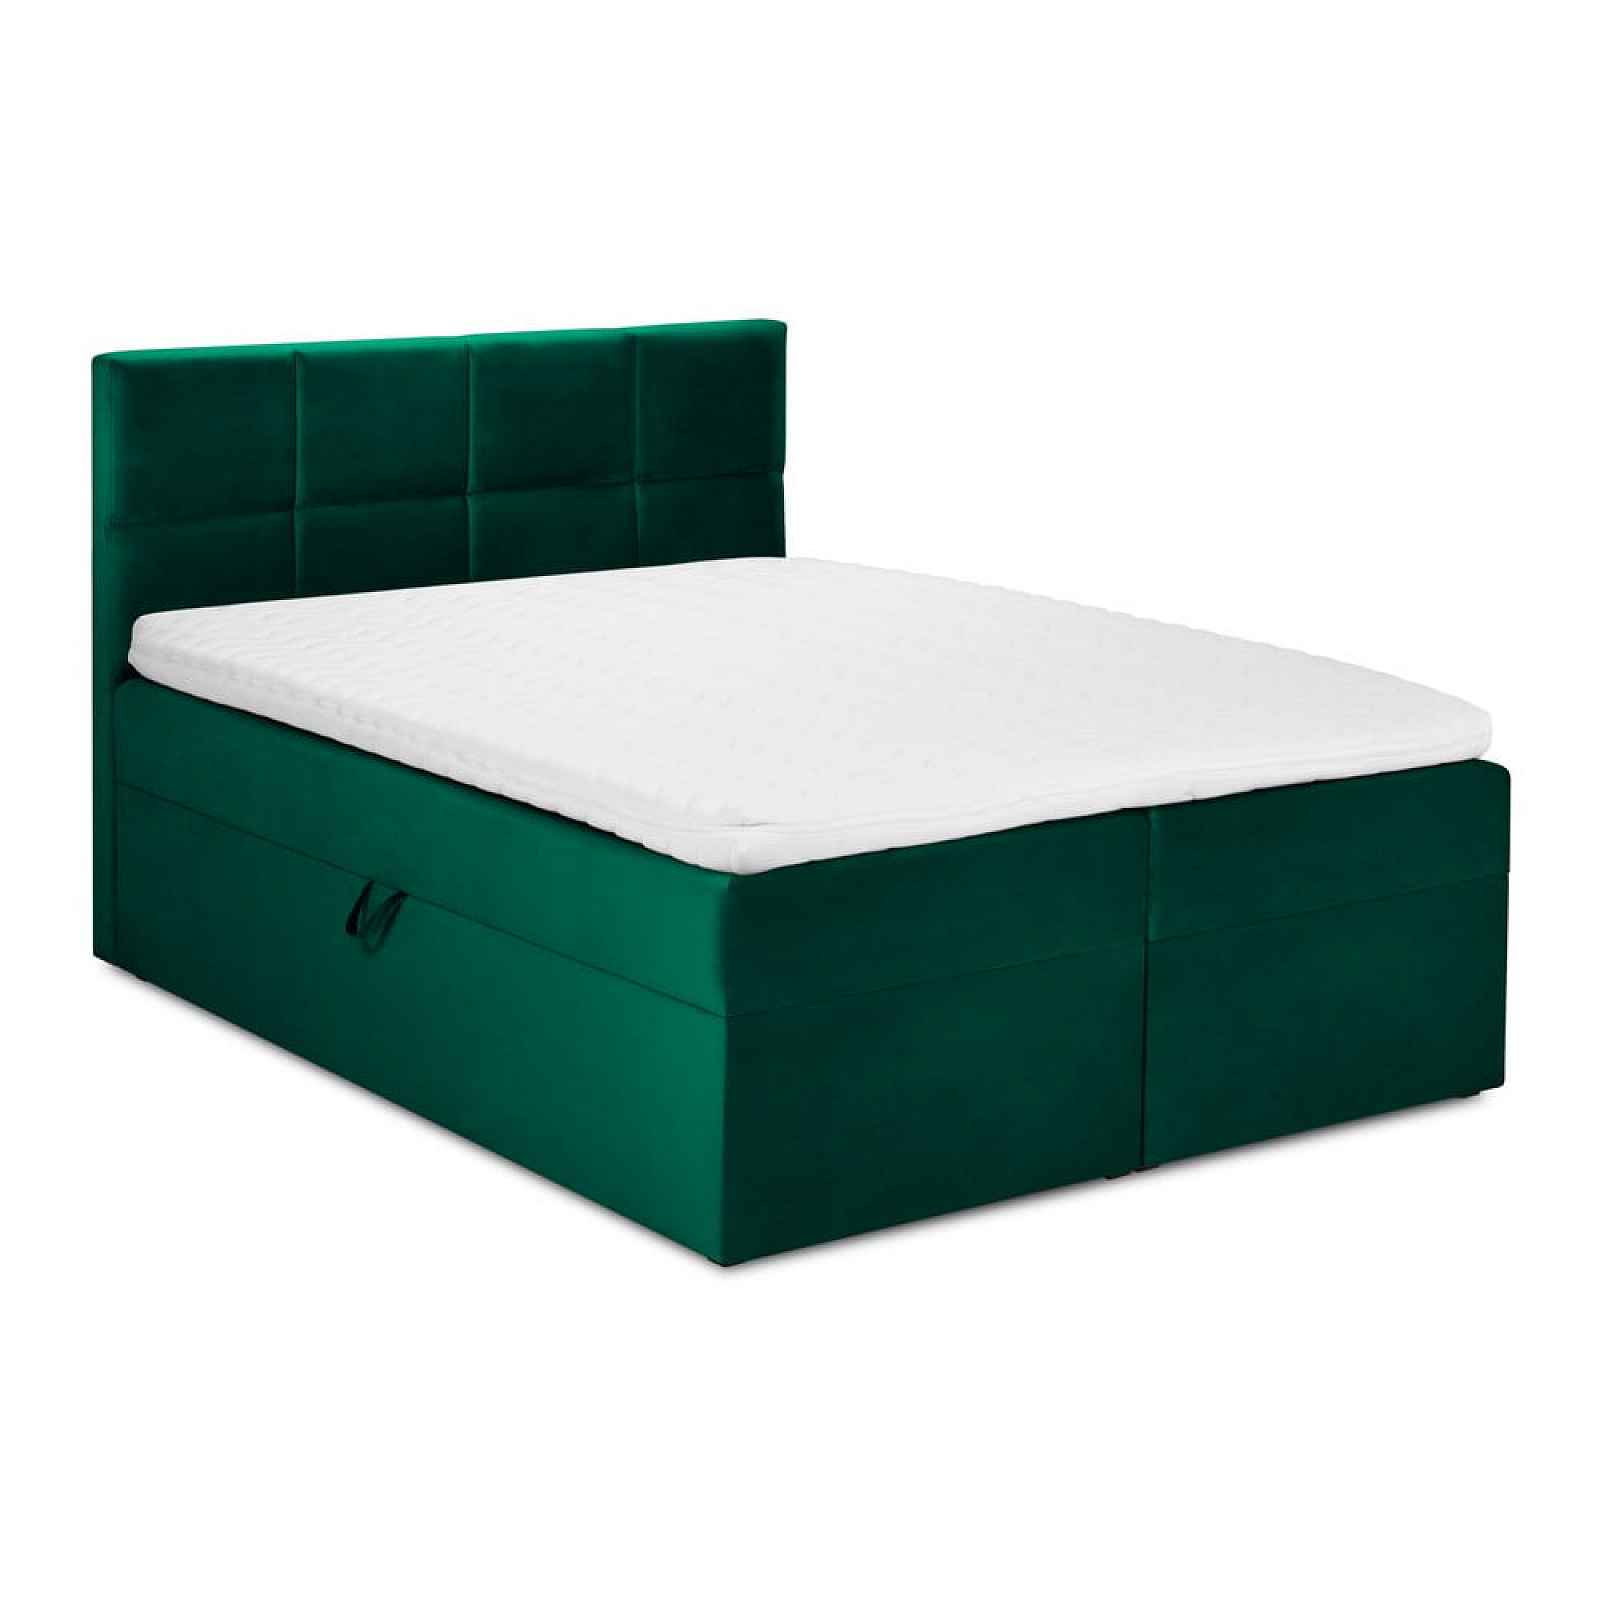 Zelená sametová dvoulůžková postel Mazzini Beds Mimicry, 180 x 200 cm